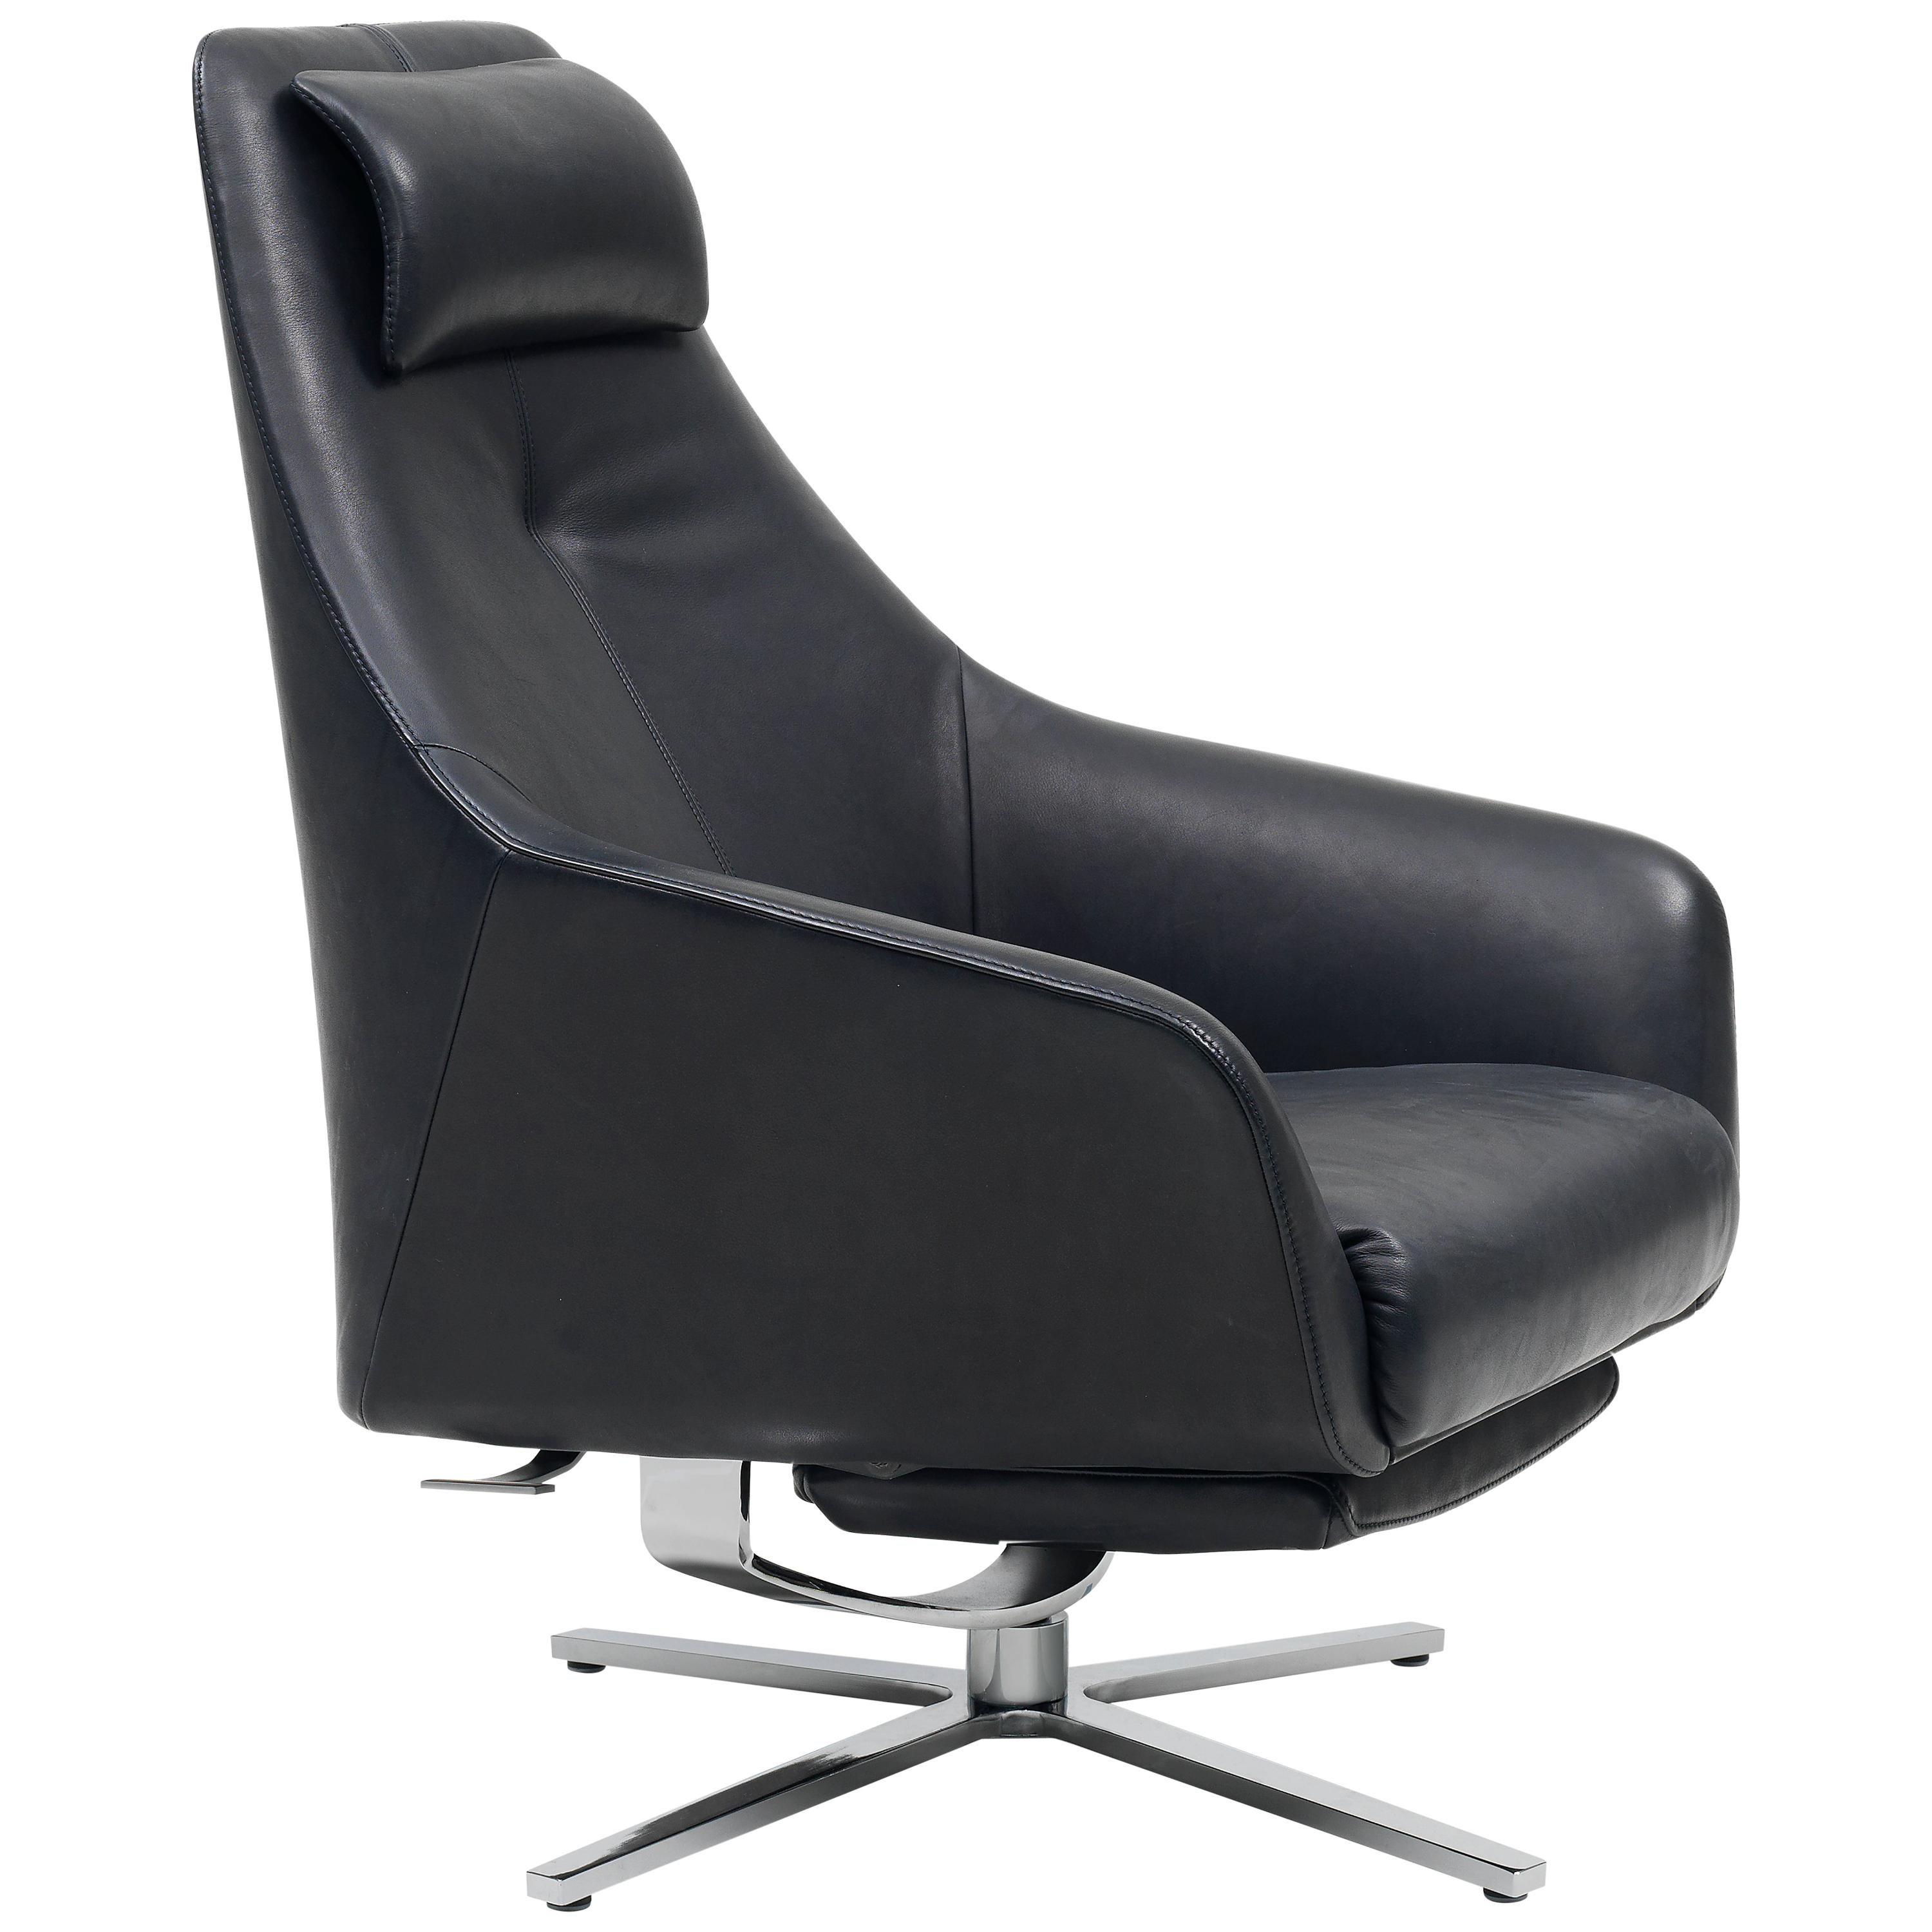 Der schlanke und elegante Sessel DS-277/11 setzt ein klares Zeichen, ohne dabei aufdringlich zu wirken. Erhältlich in schwarzem, taupefarbenem und braunem Leder, bringt dieses Stück schnell Komfort und Stil in jeden Raum.
 